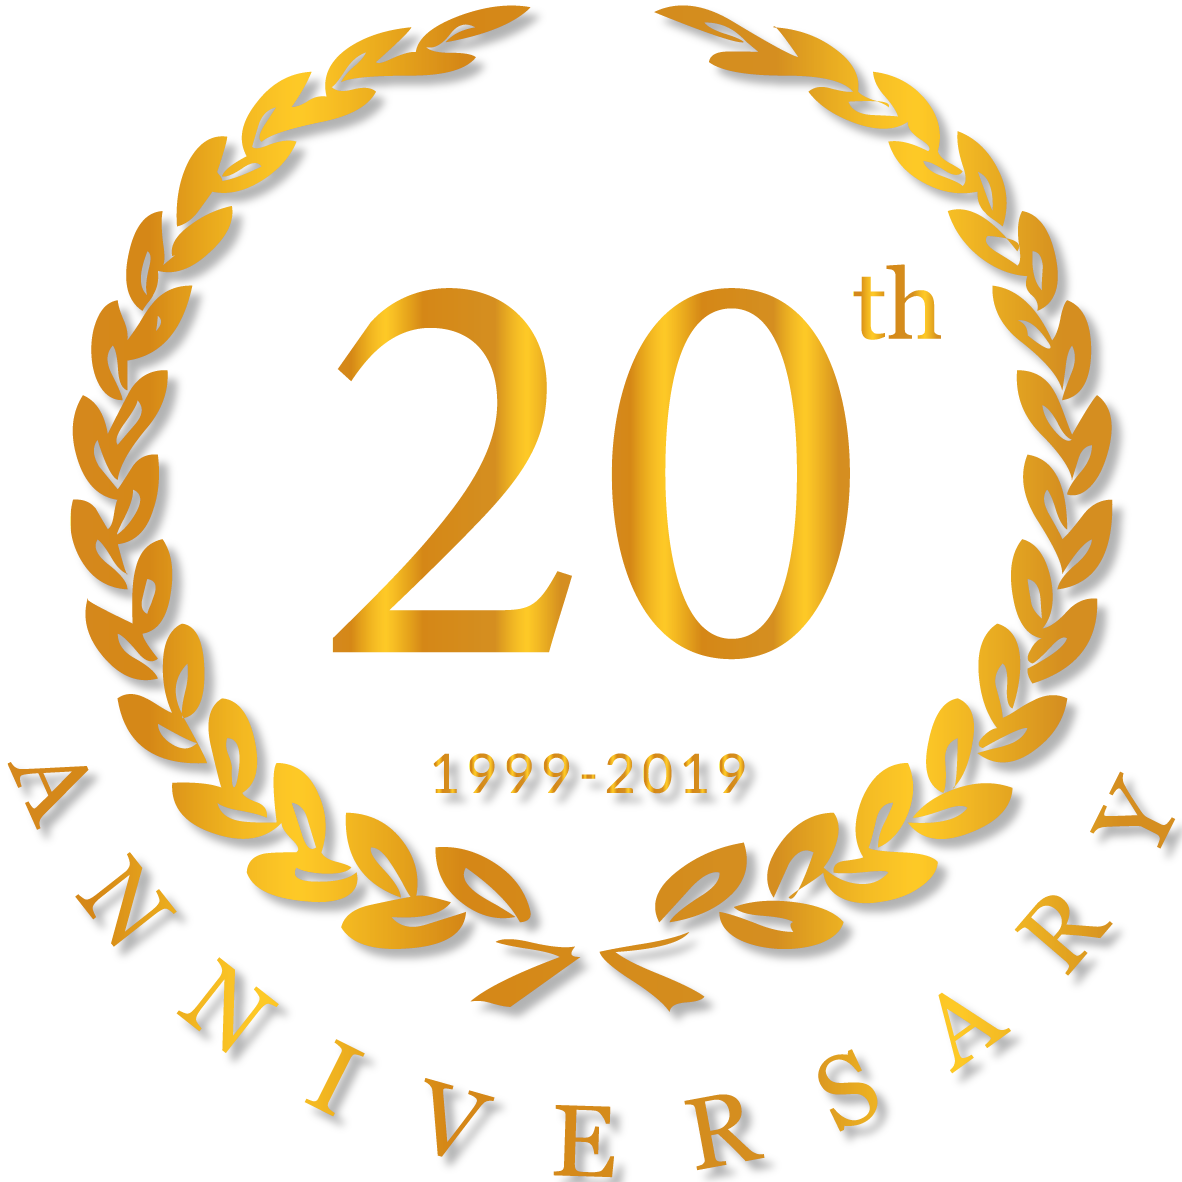 Credit One - 20 Years Anniversary